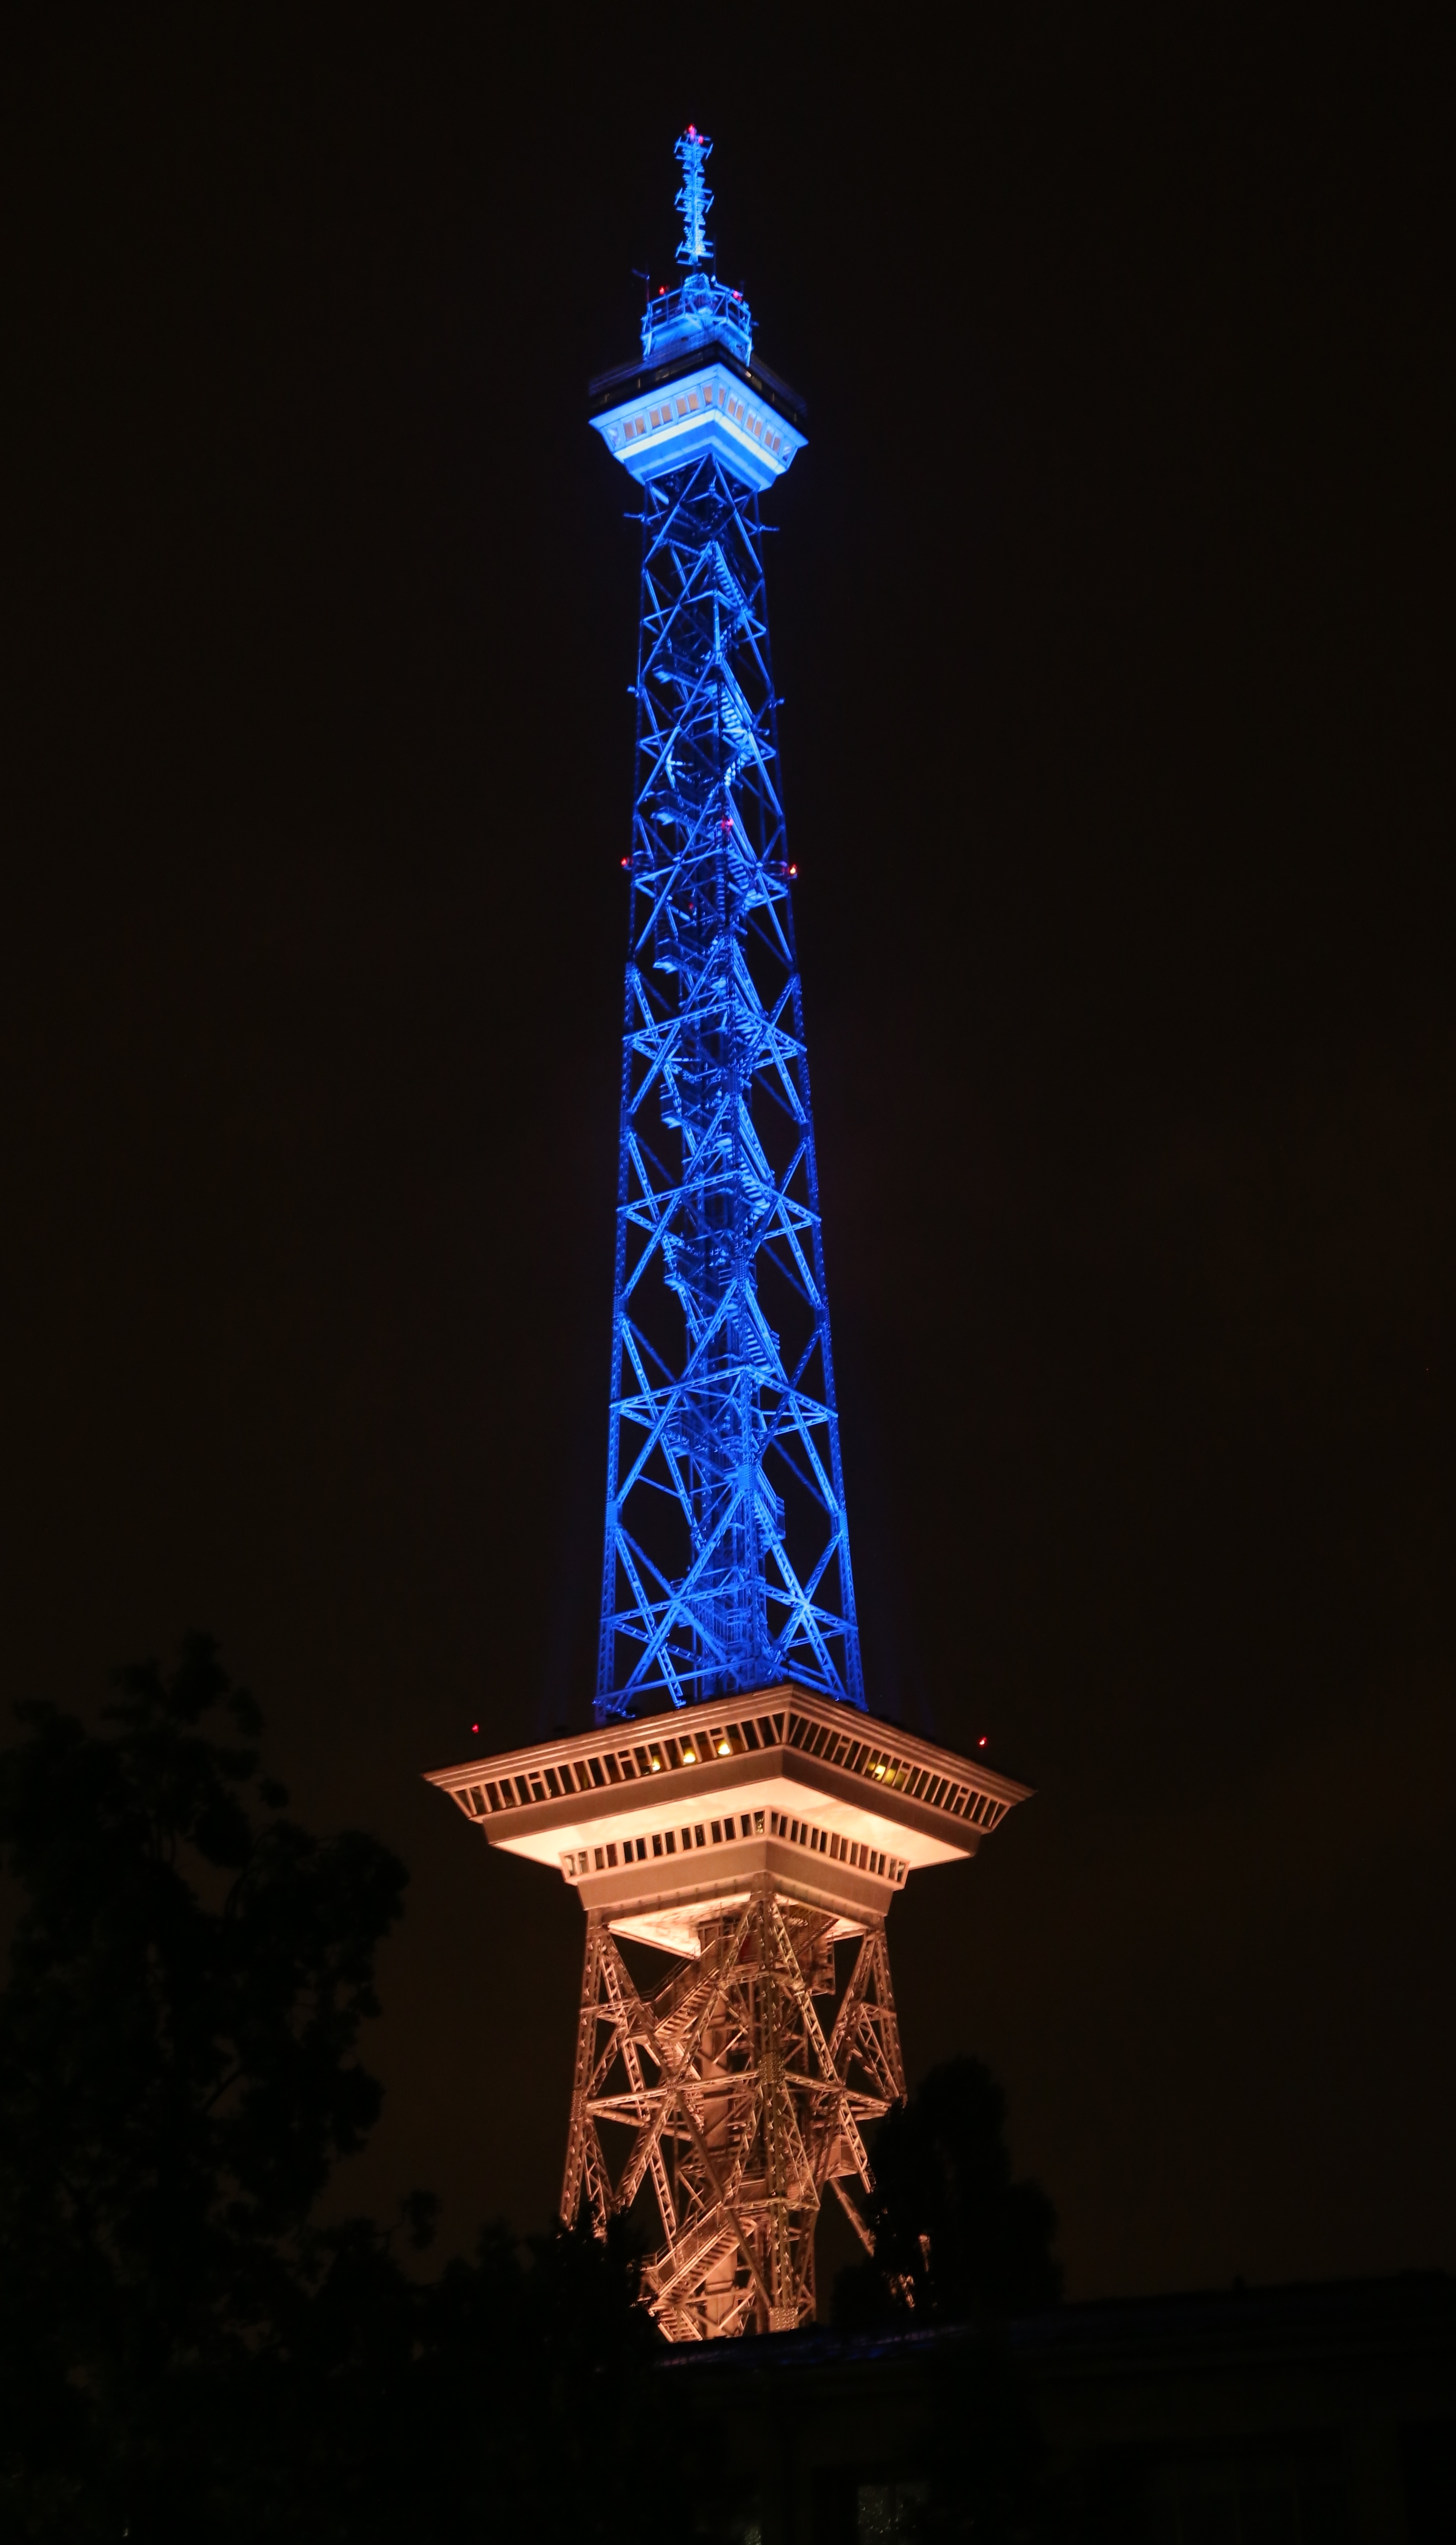 Der Funkturm strahlt anlässlich des 125. Jubiläums von Hertha BSC in der Farbe Blau.